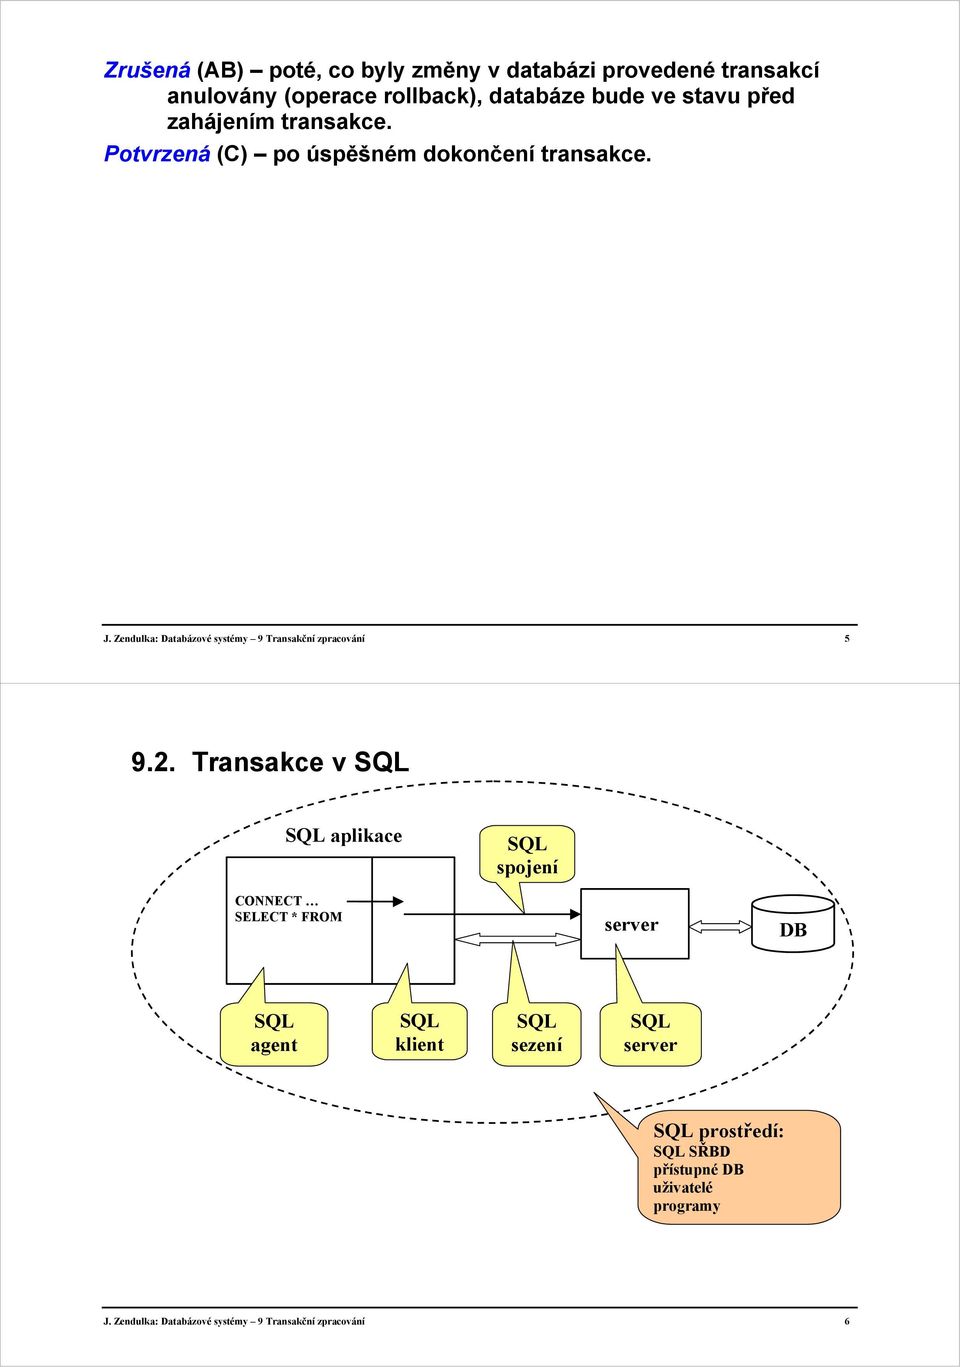 Zendulka: Databázové systémy 9 Transakční zpracování 5 9.2.